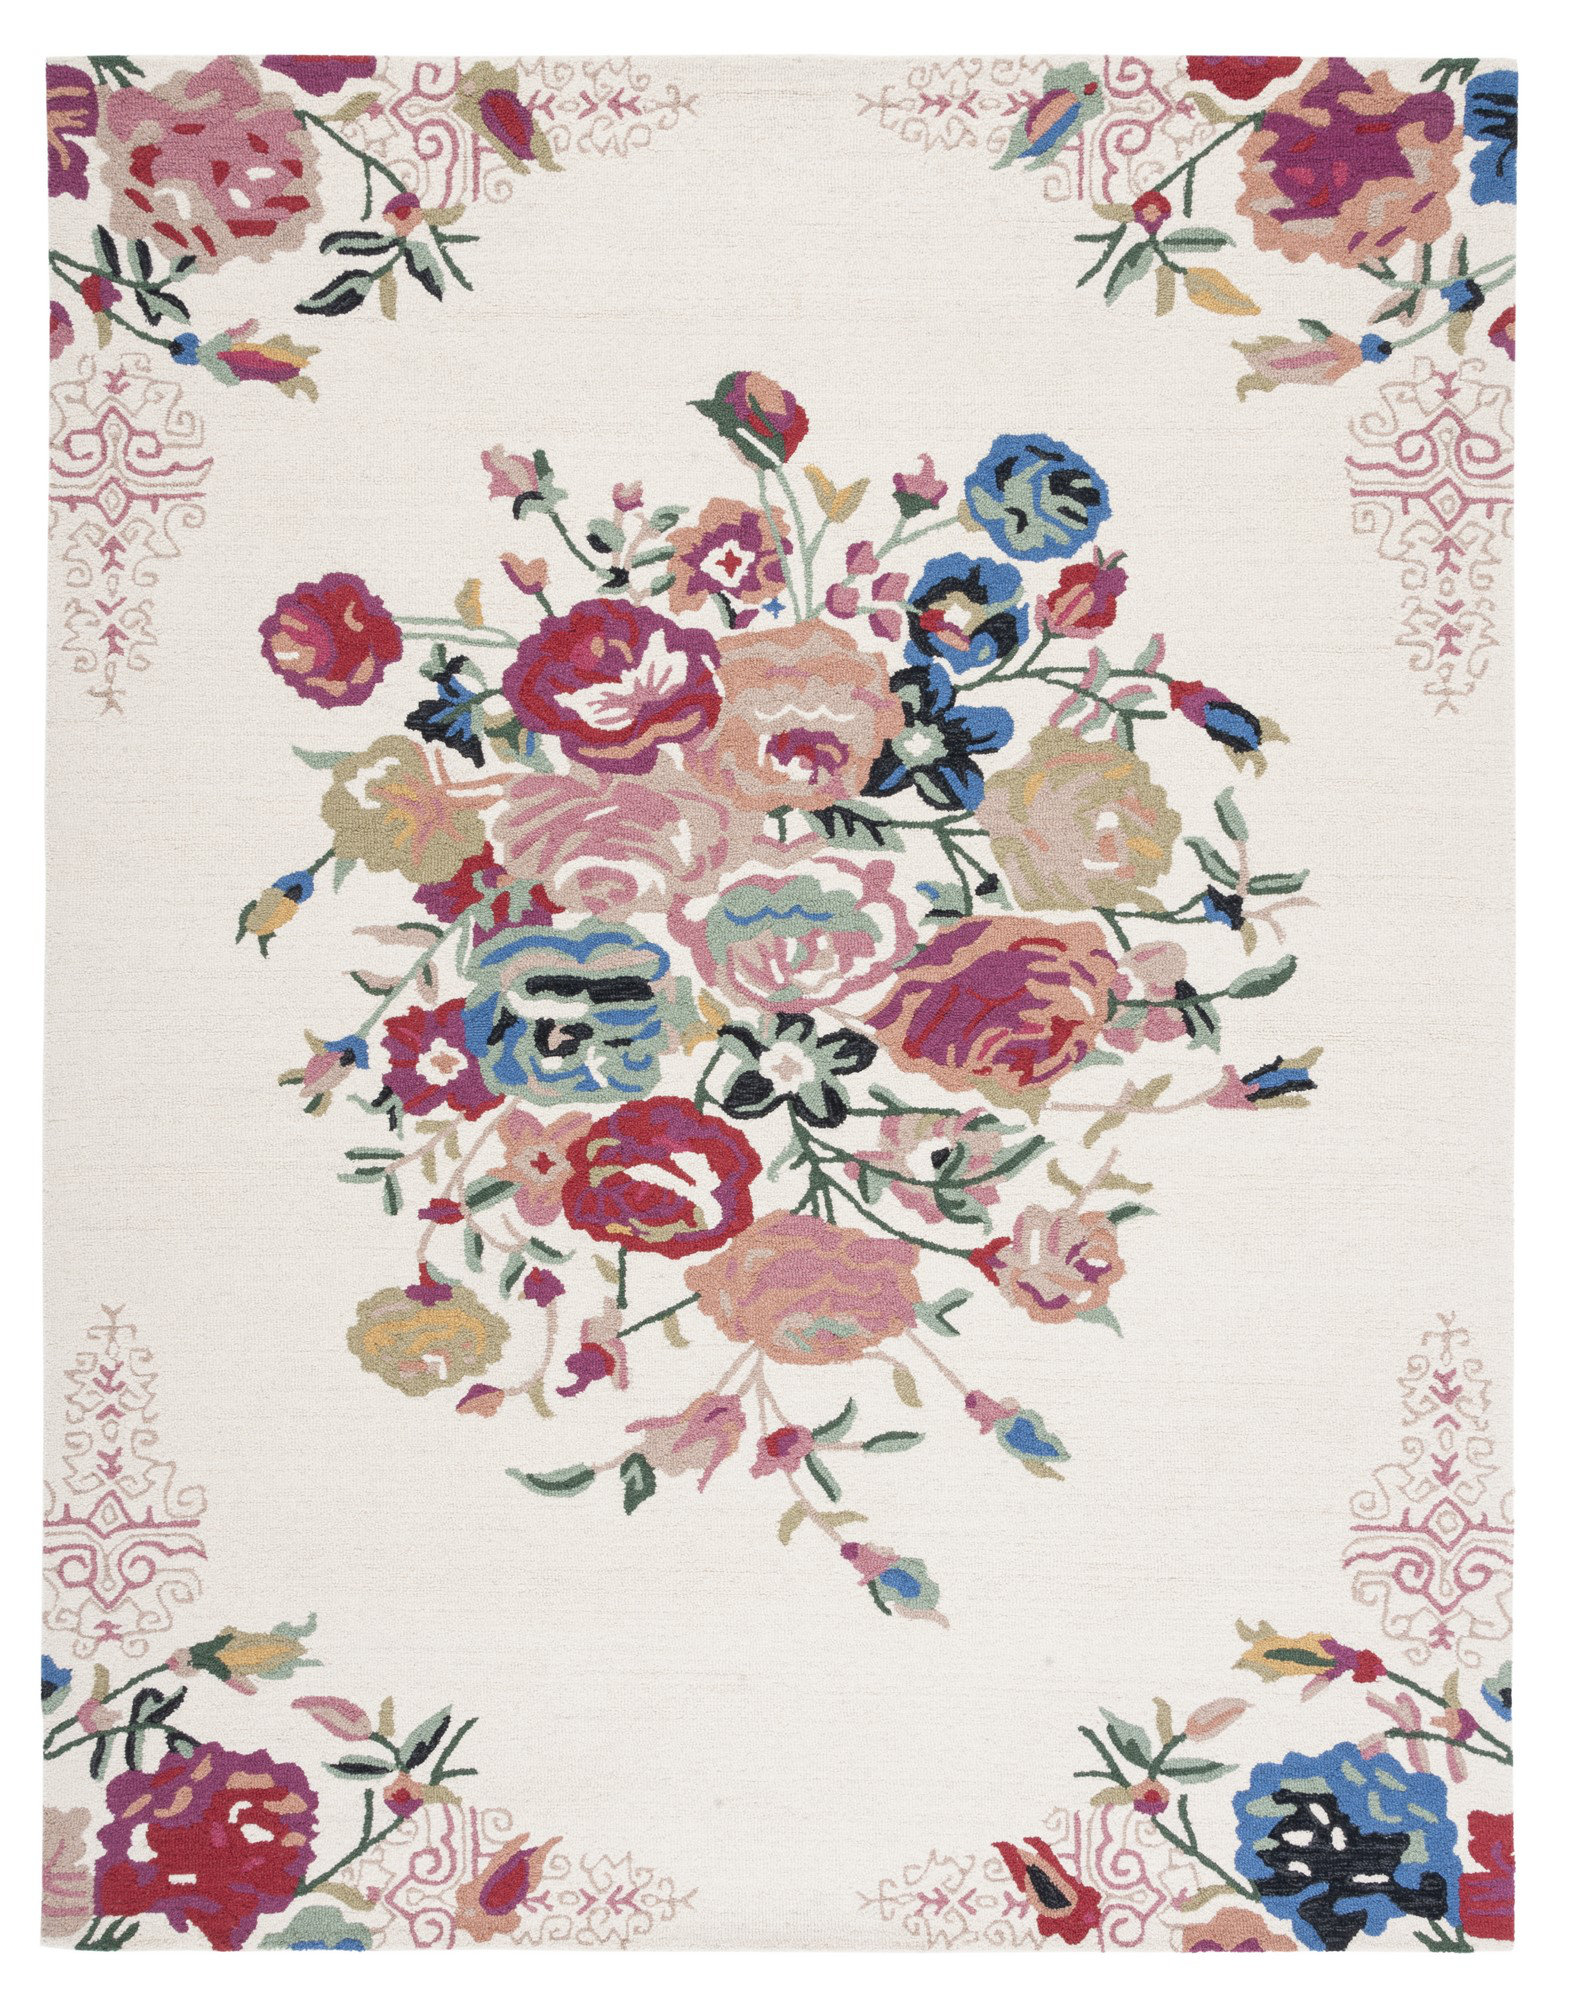 Vintage Floral Hooked Rug / Handmade Folk Art Rose Pattern Accent